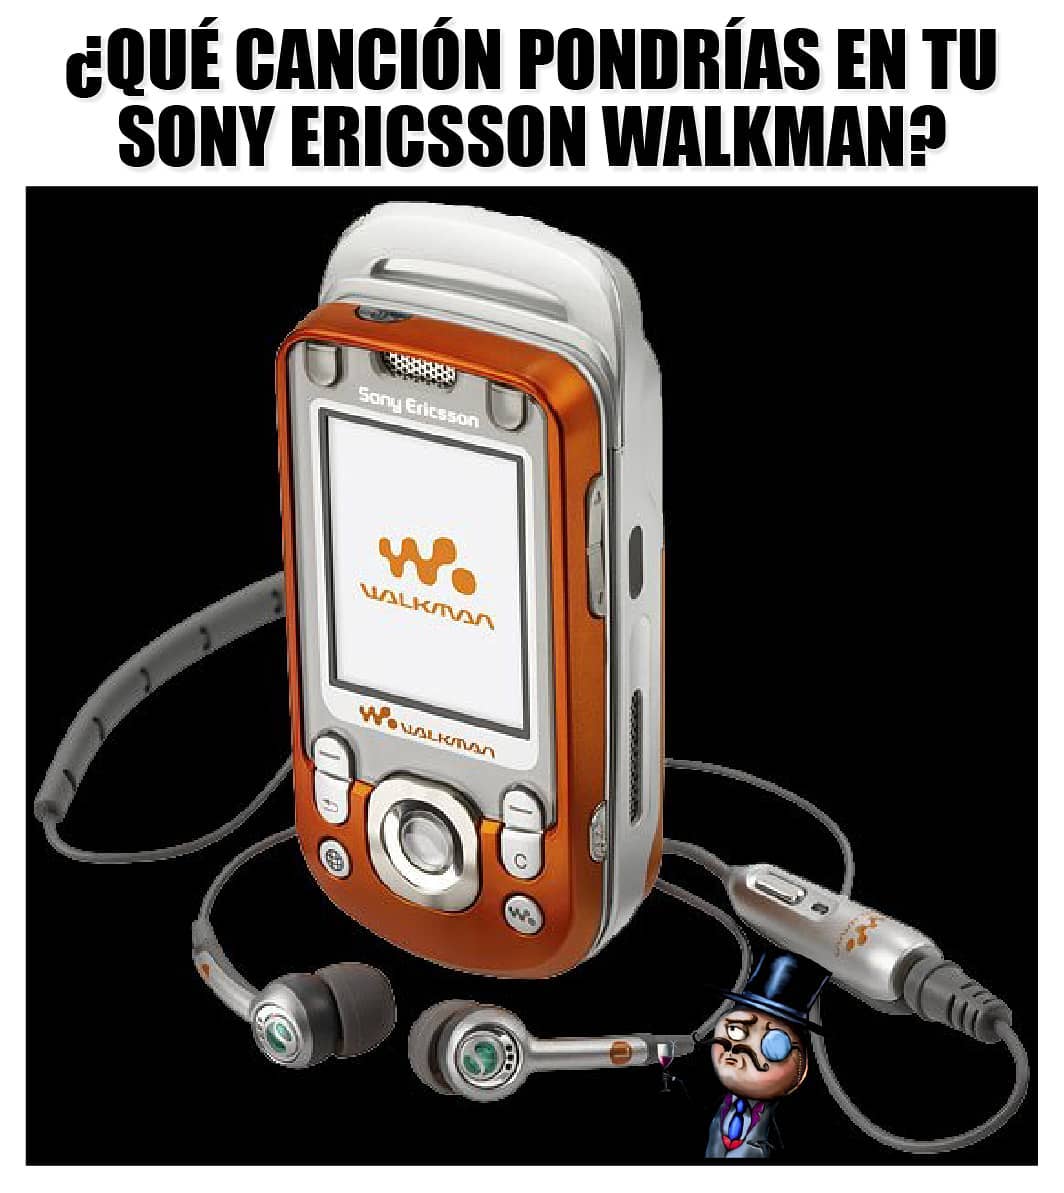 ¿Qué canción pondrías en tu sony ericsson walkman?